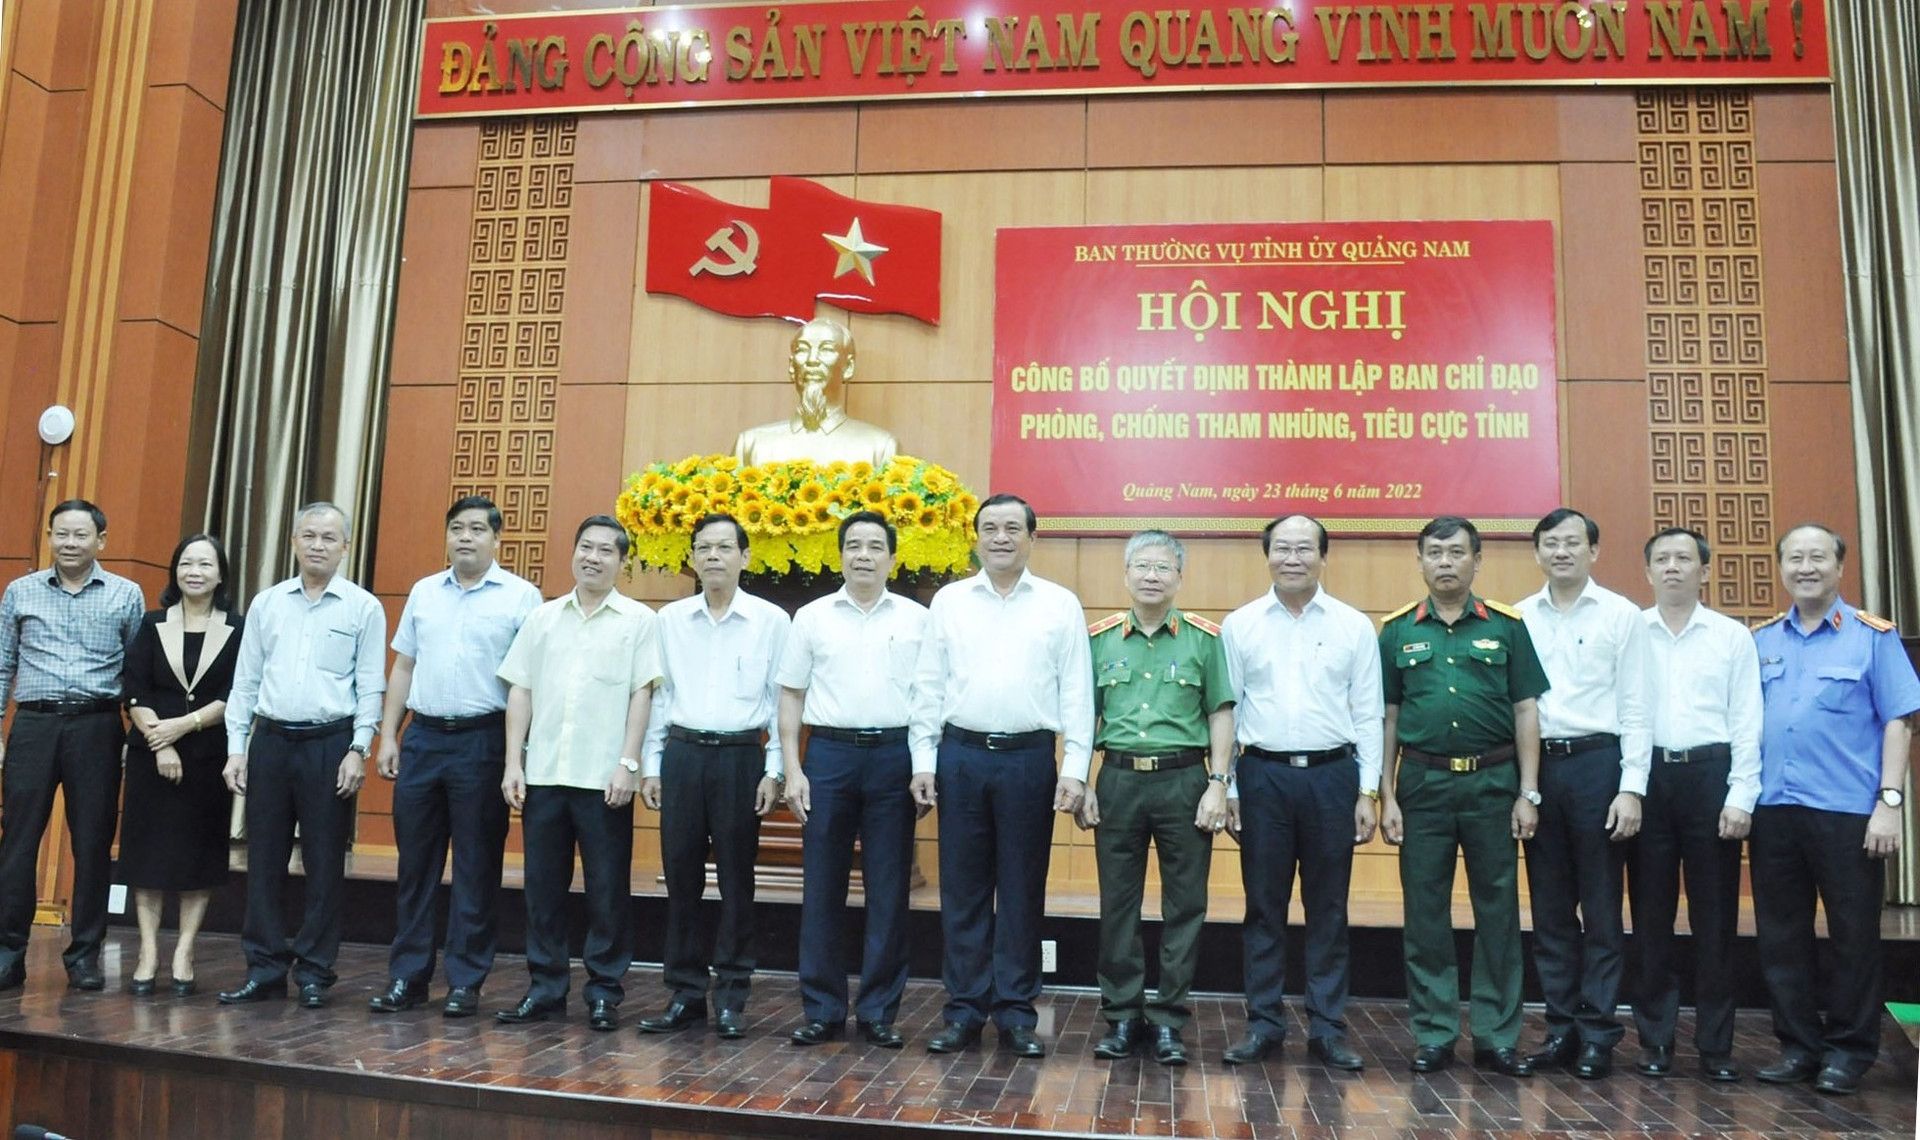 Ban Chỉ đạo phòng chống tham nhũng, tiêu cực tỉnh Quảng Nam ra mắt nhận nhiệm vụ vào sáng nay 23.6. Ảnh: N.Đ